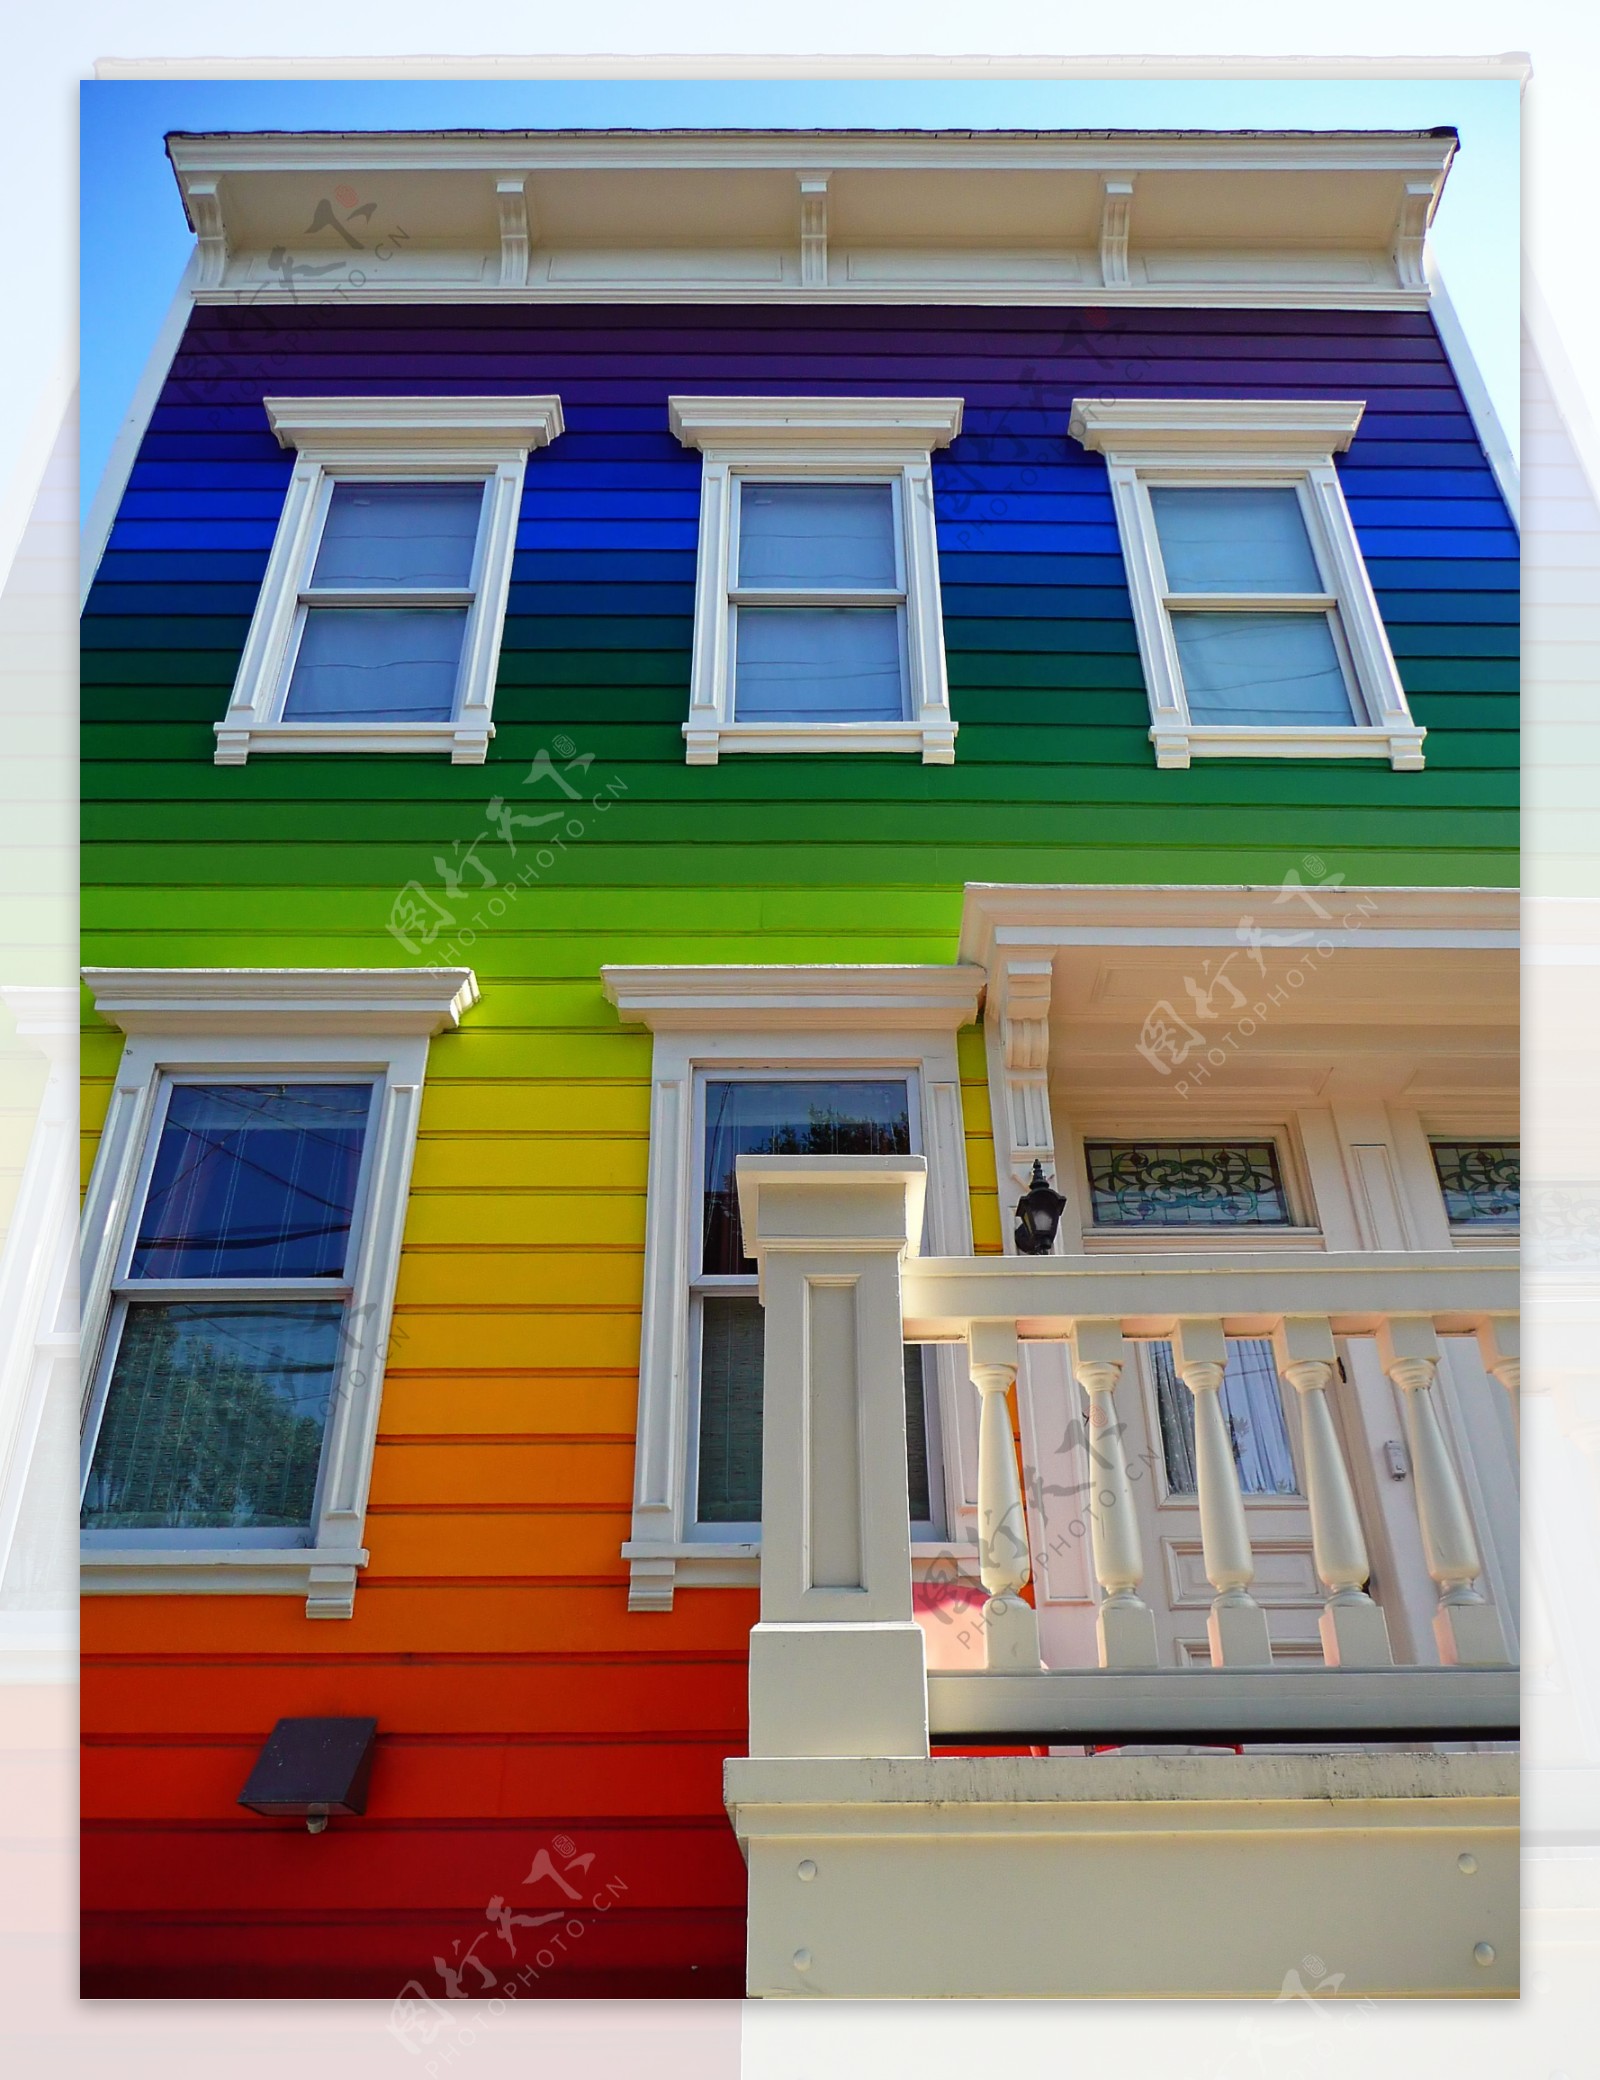 彩色房子图片